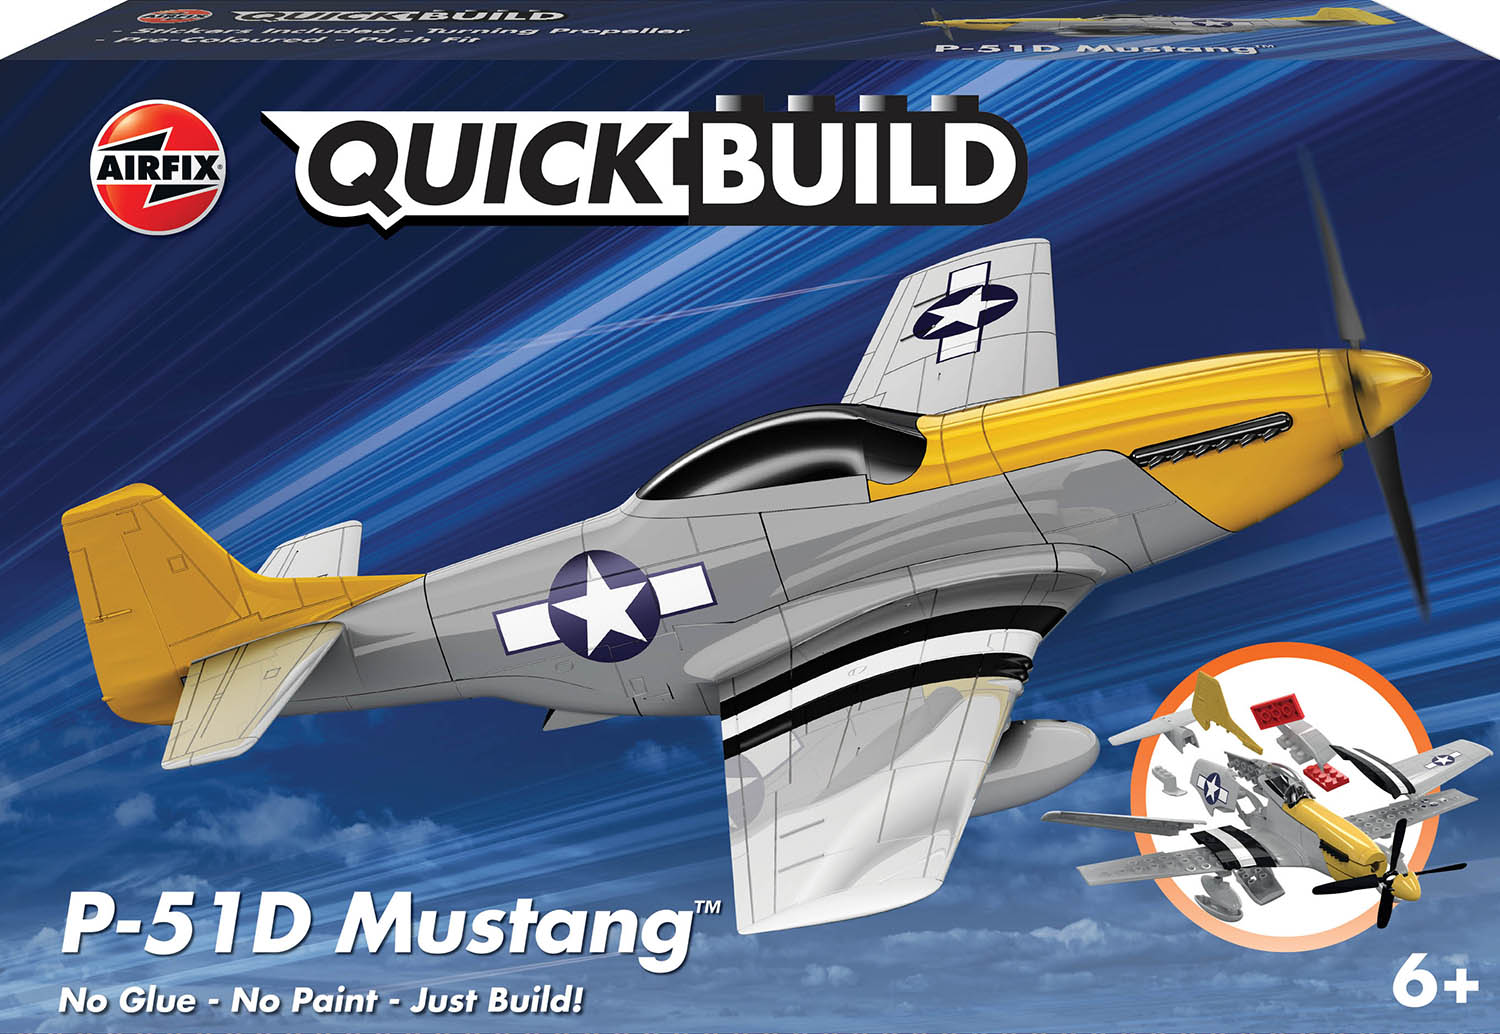 Airfix QUICK BUILD P-51D Mustang Plastic Model Kit J6016